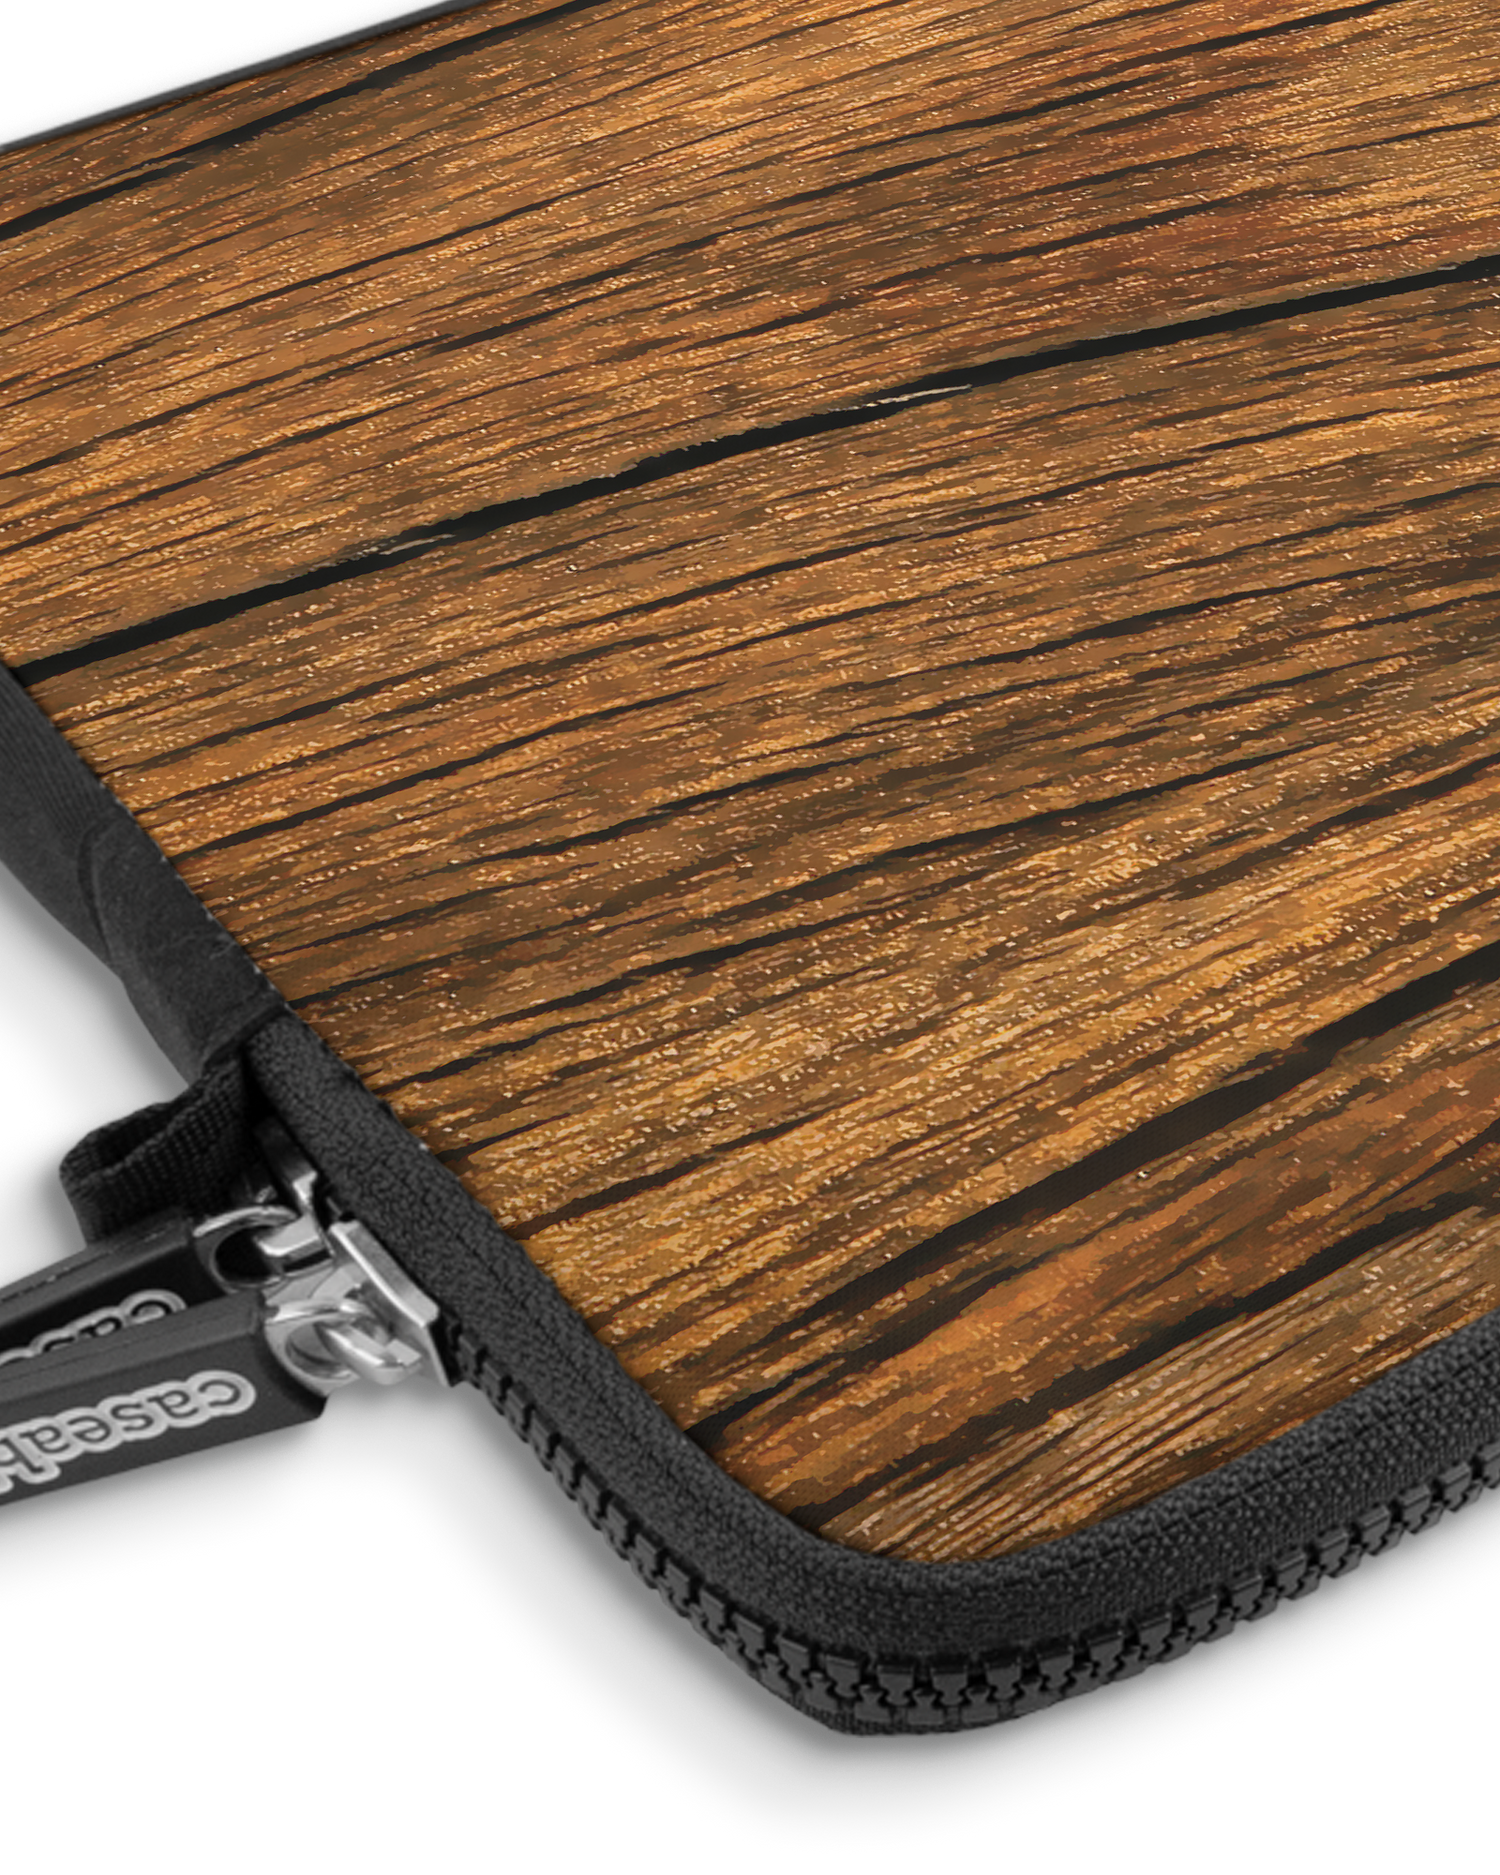 Wood Premium Laptoptasche 13 Zoll mit Gerät im Inneren